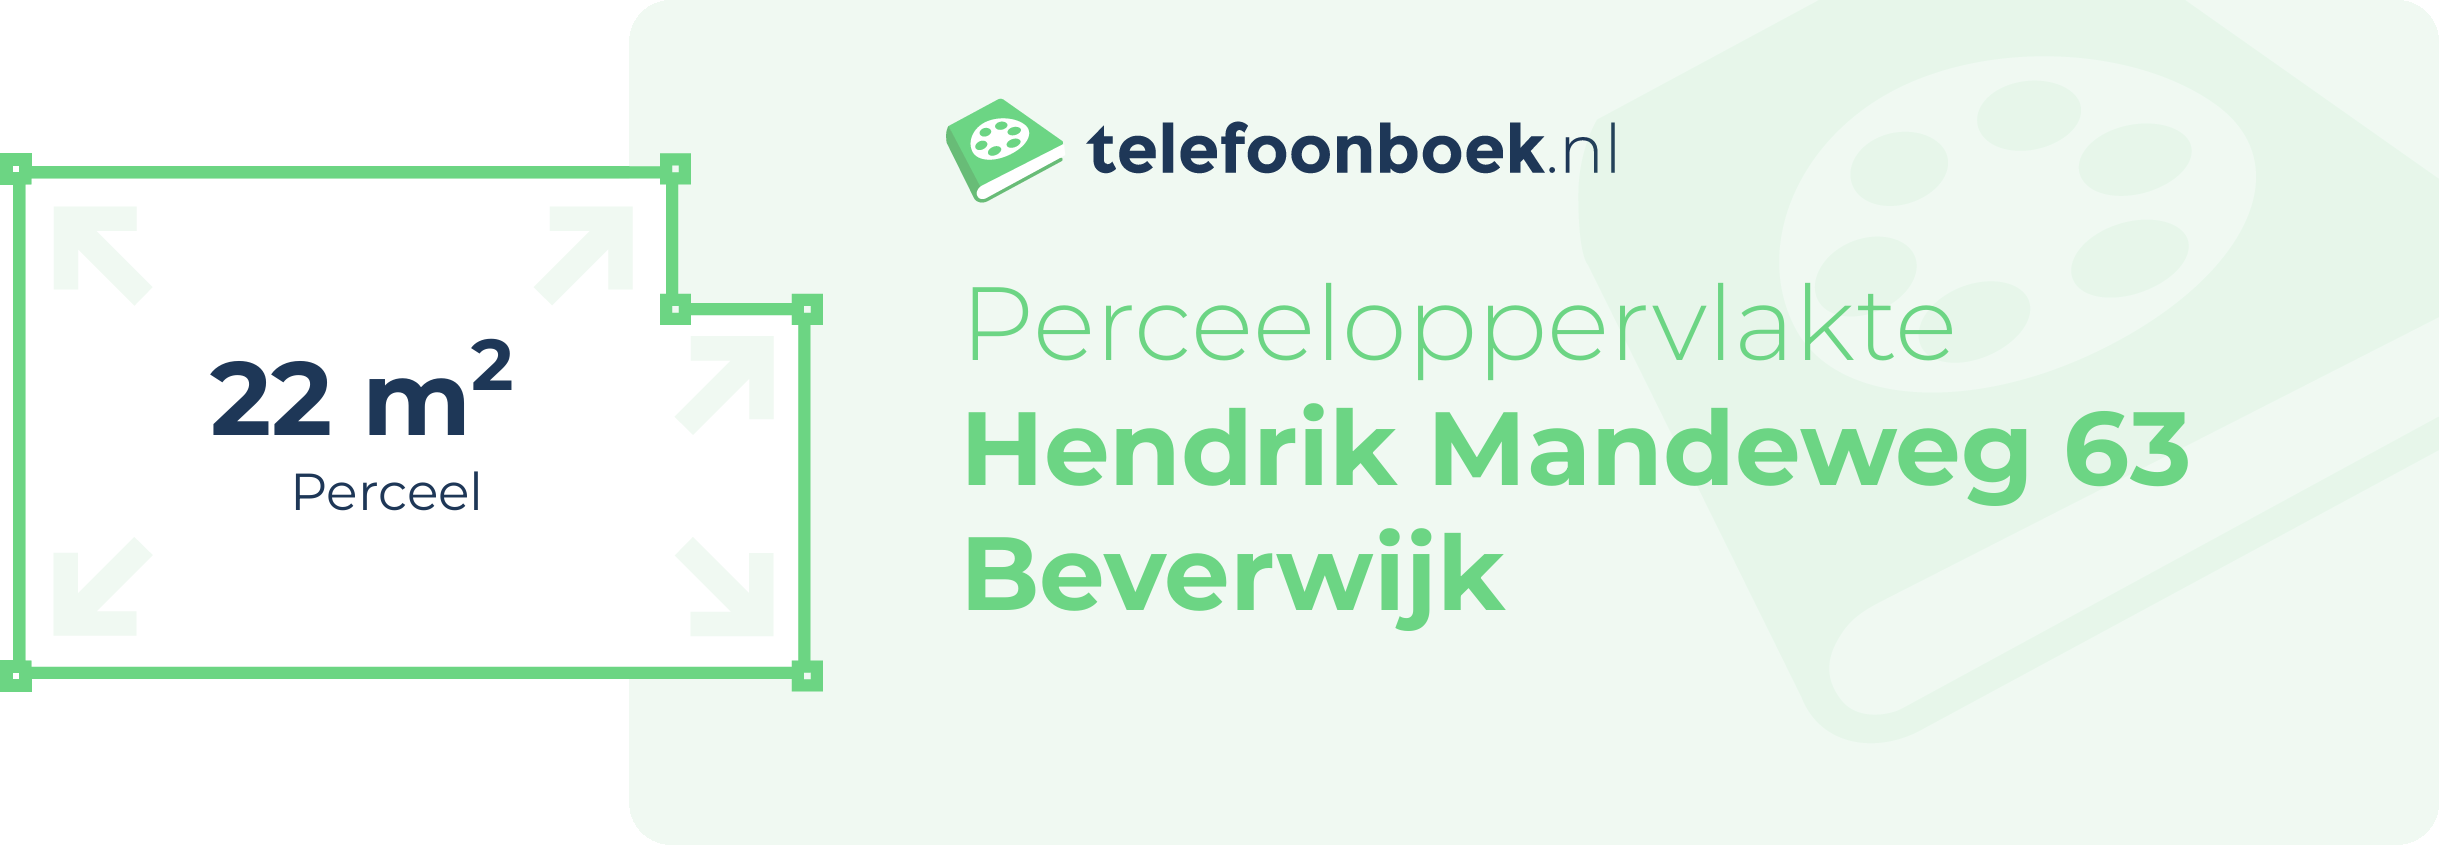 Perceeloppervlakte Hendrik Mandeweg 63 Beverwijk